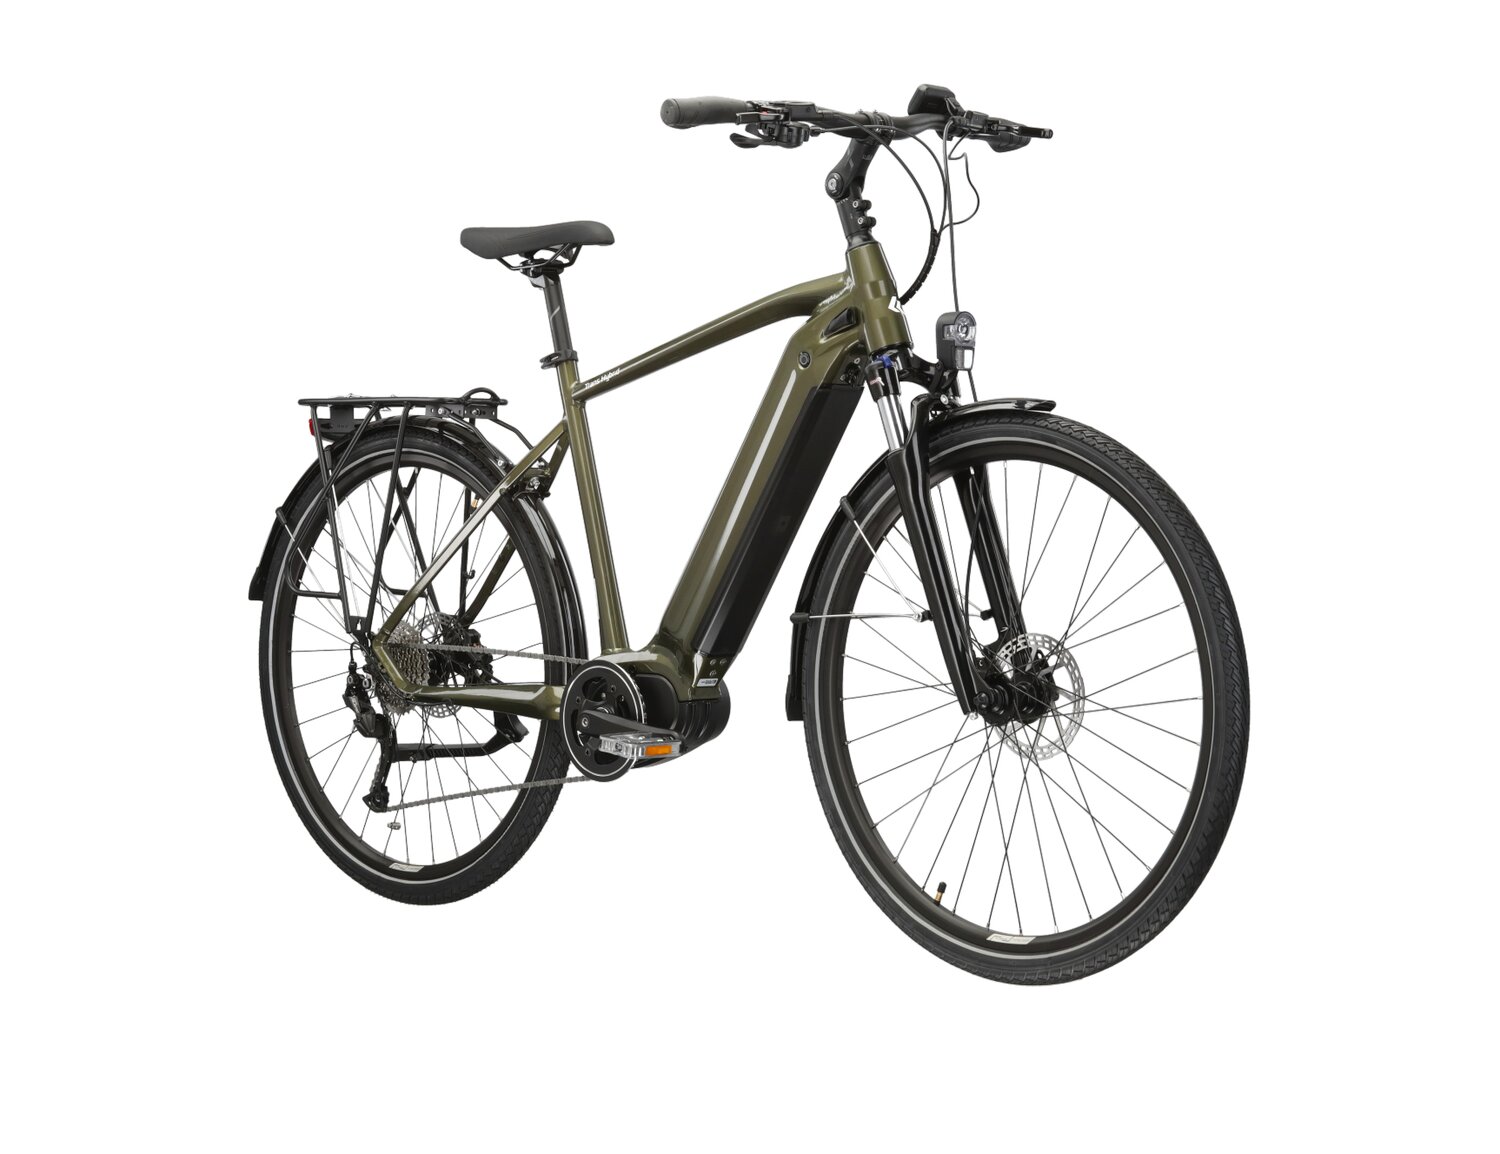  Elektryczny rower trekkingowy KROSS Trans Hybrid 2.0 730 Wh na aluminiowej ramie w kolorze khaki wyposażony w osprzęt Shimano i napęd elektryczny Bafang